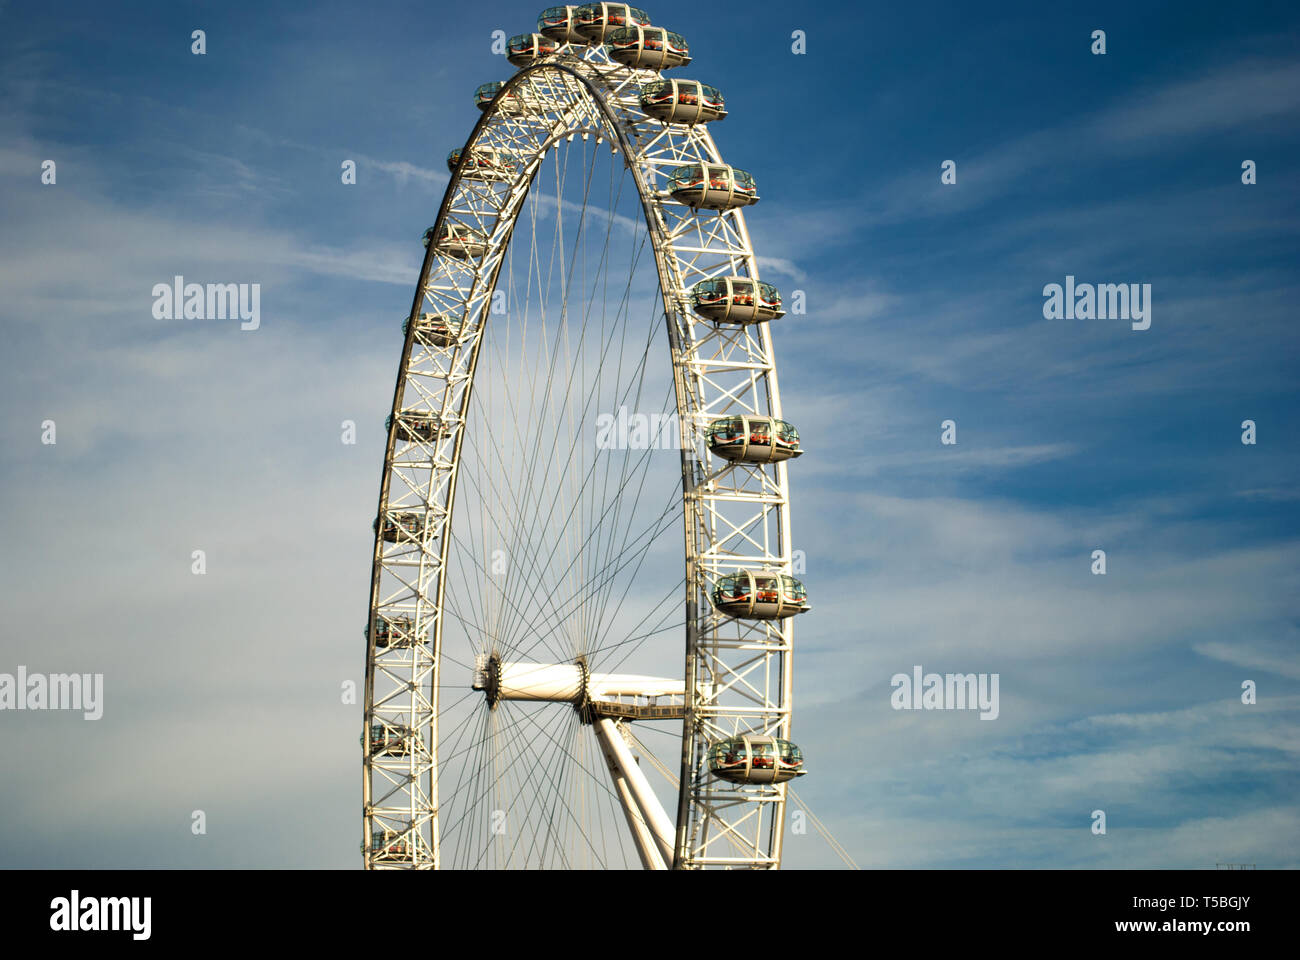 LONDON - Januar 25: Das London Eye, auch als Millennium Wheel bekannt, ist ein 135 Meter Riesenrad am westlichen Ende der Jubilee Gardens auf j Stockfoto